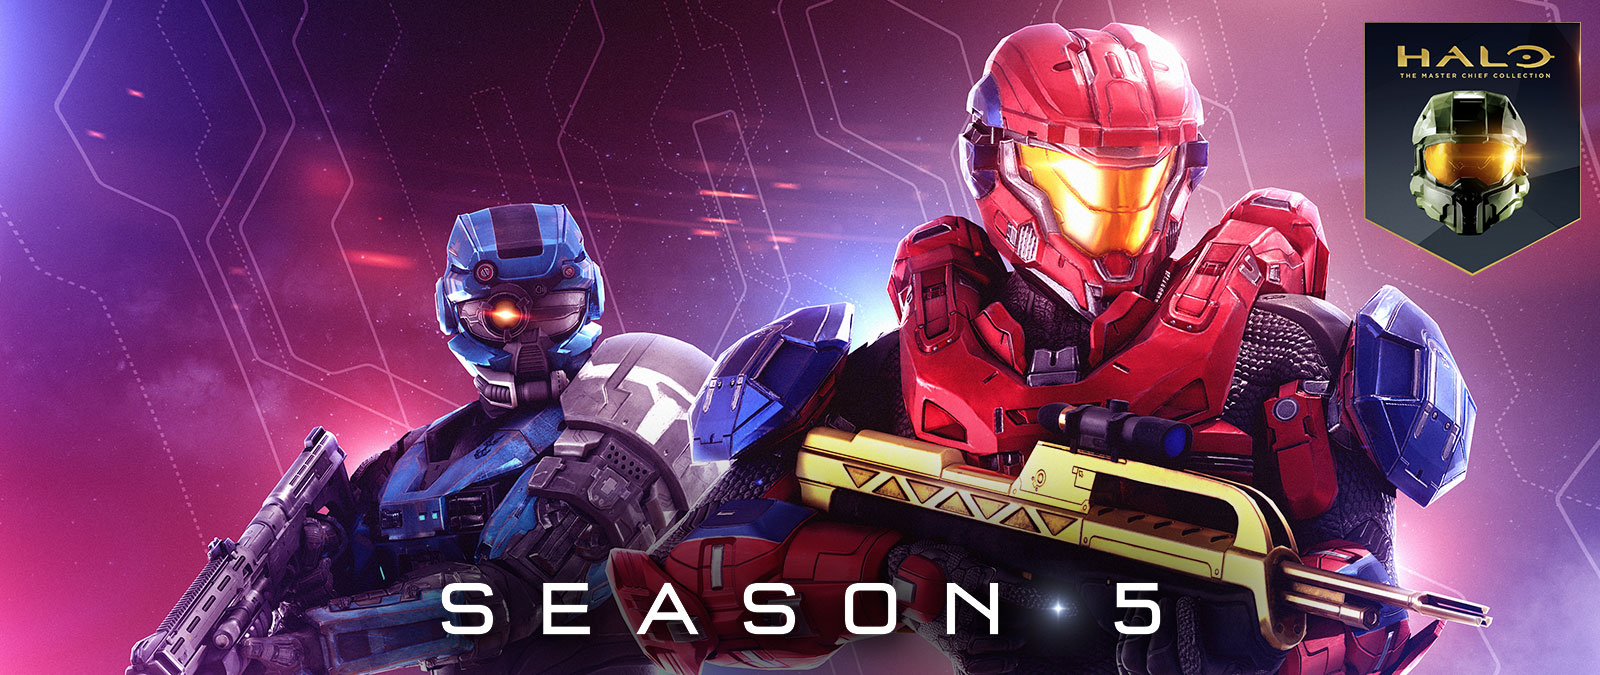 『Halo: The Master Chief Collection』シーズン 5、金色のバトルライフルを構える赤のスパルタンと、特別仕様の単眼ヘルメットを装着した青のスパルタン。